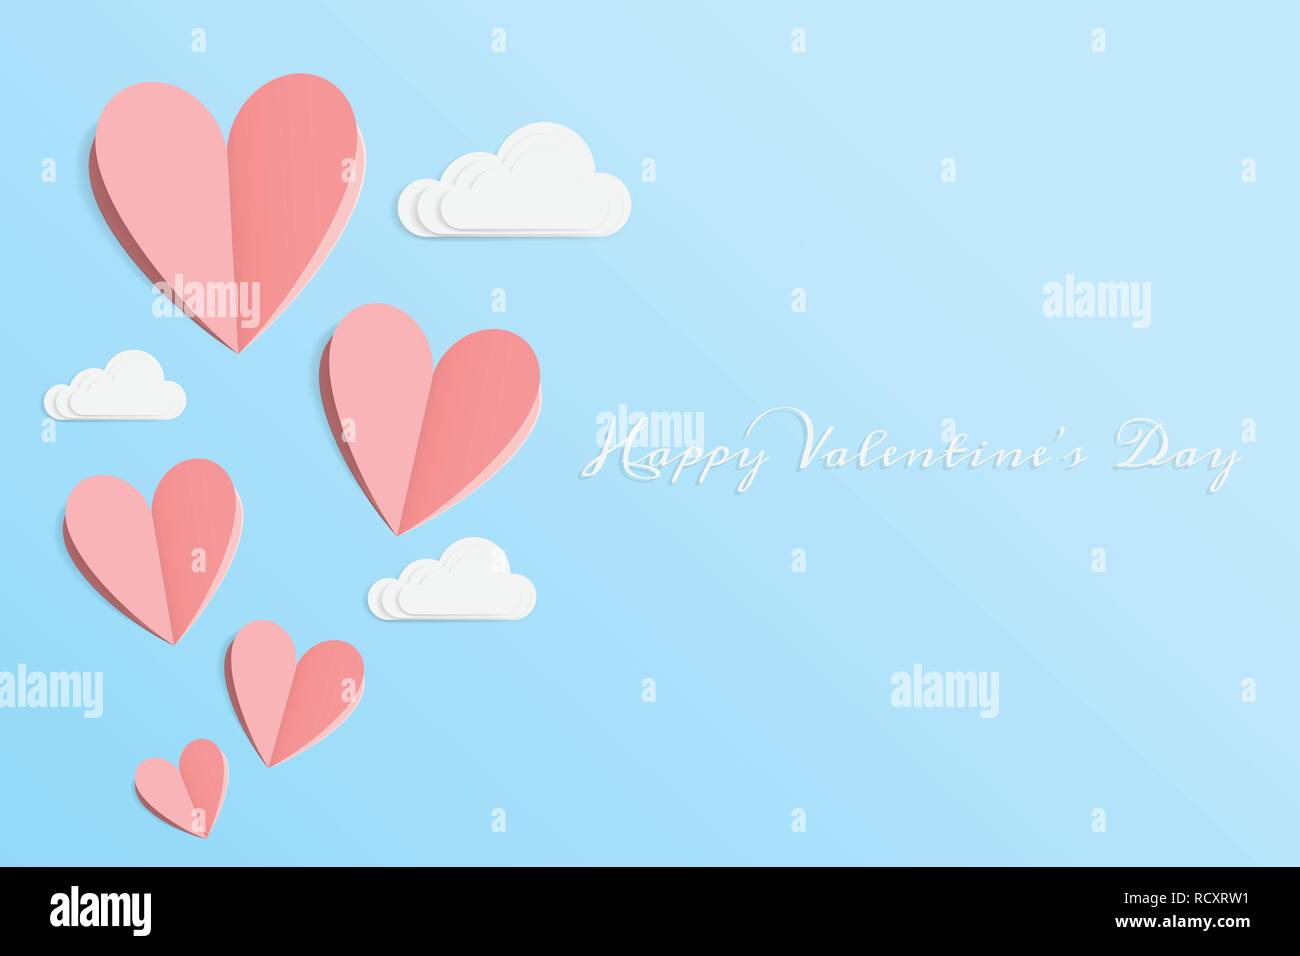 Der Vektor der Liebe und Happy Valentine's Day. origami design elemente Papier schneiden rosa Herzen schweben auf dem blauen Himmel mit weißen Wolken gemacht. paper Art und d Stock Vektor